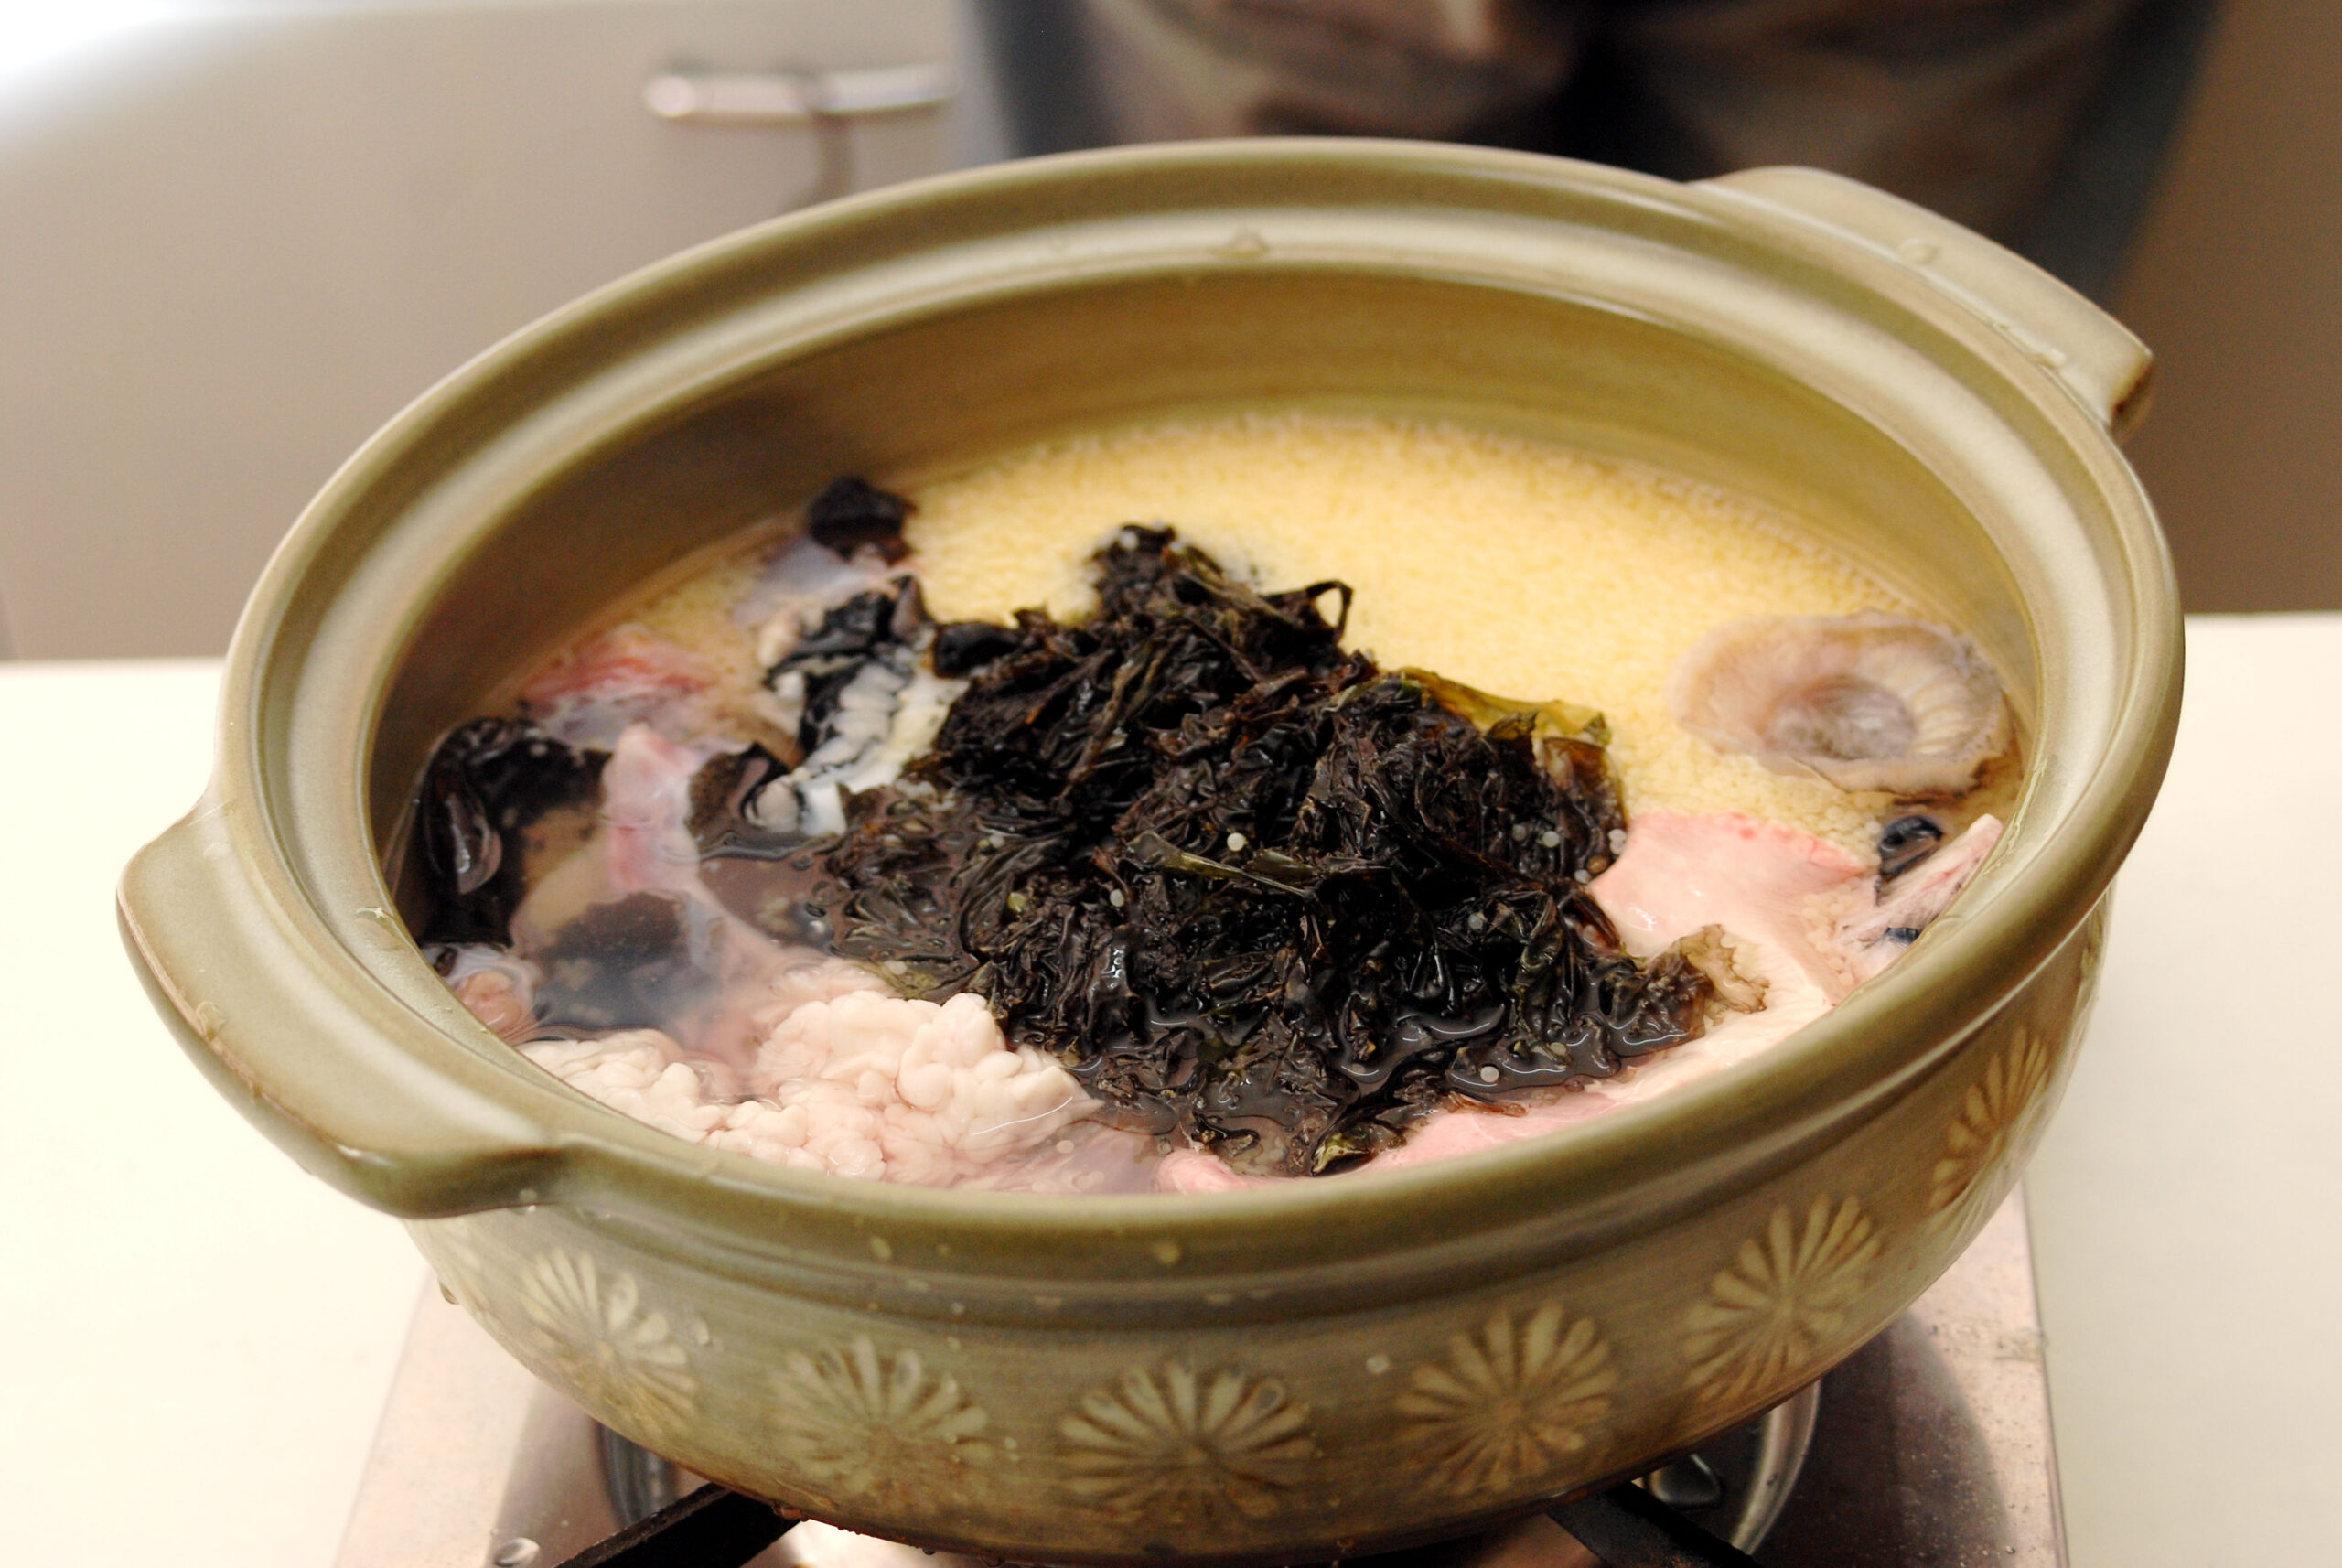 北海道の名物 ごっこ を使った鍋レシピ 北のすっぽん呼ばれるホテイウオの捌き方もご紹介 Aquabit Link